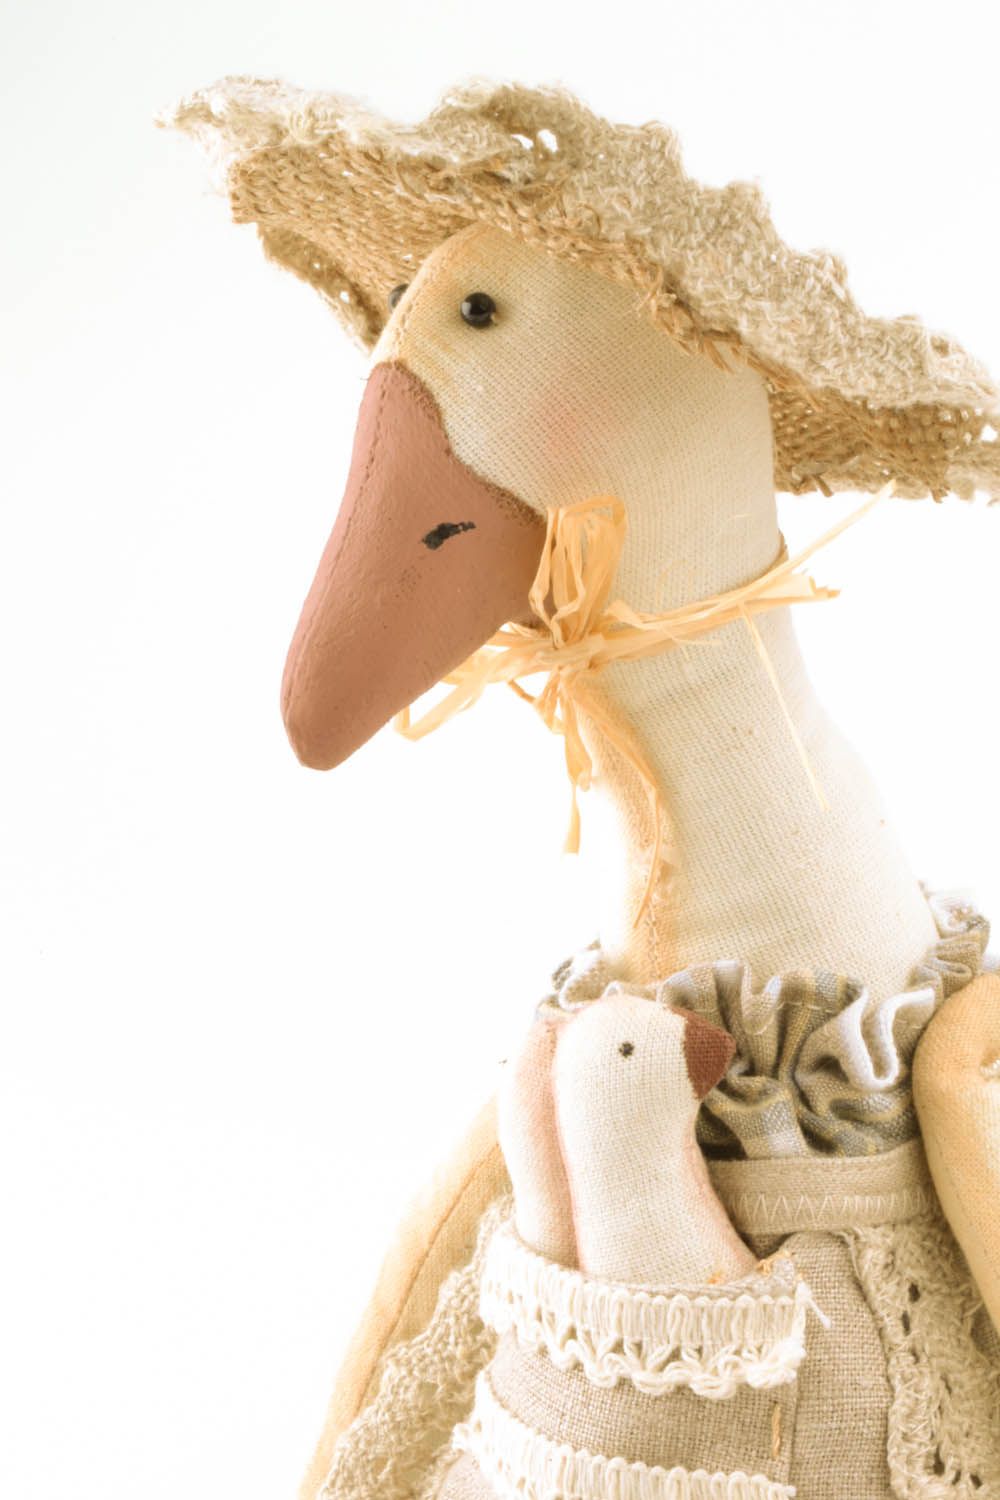 Textil Kuscheltier Ente mit Kindern foto 3